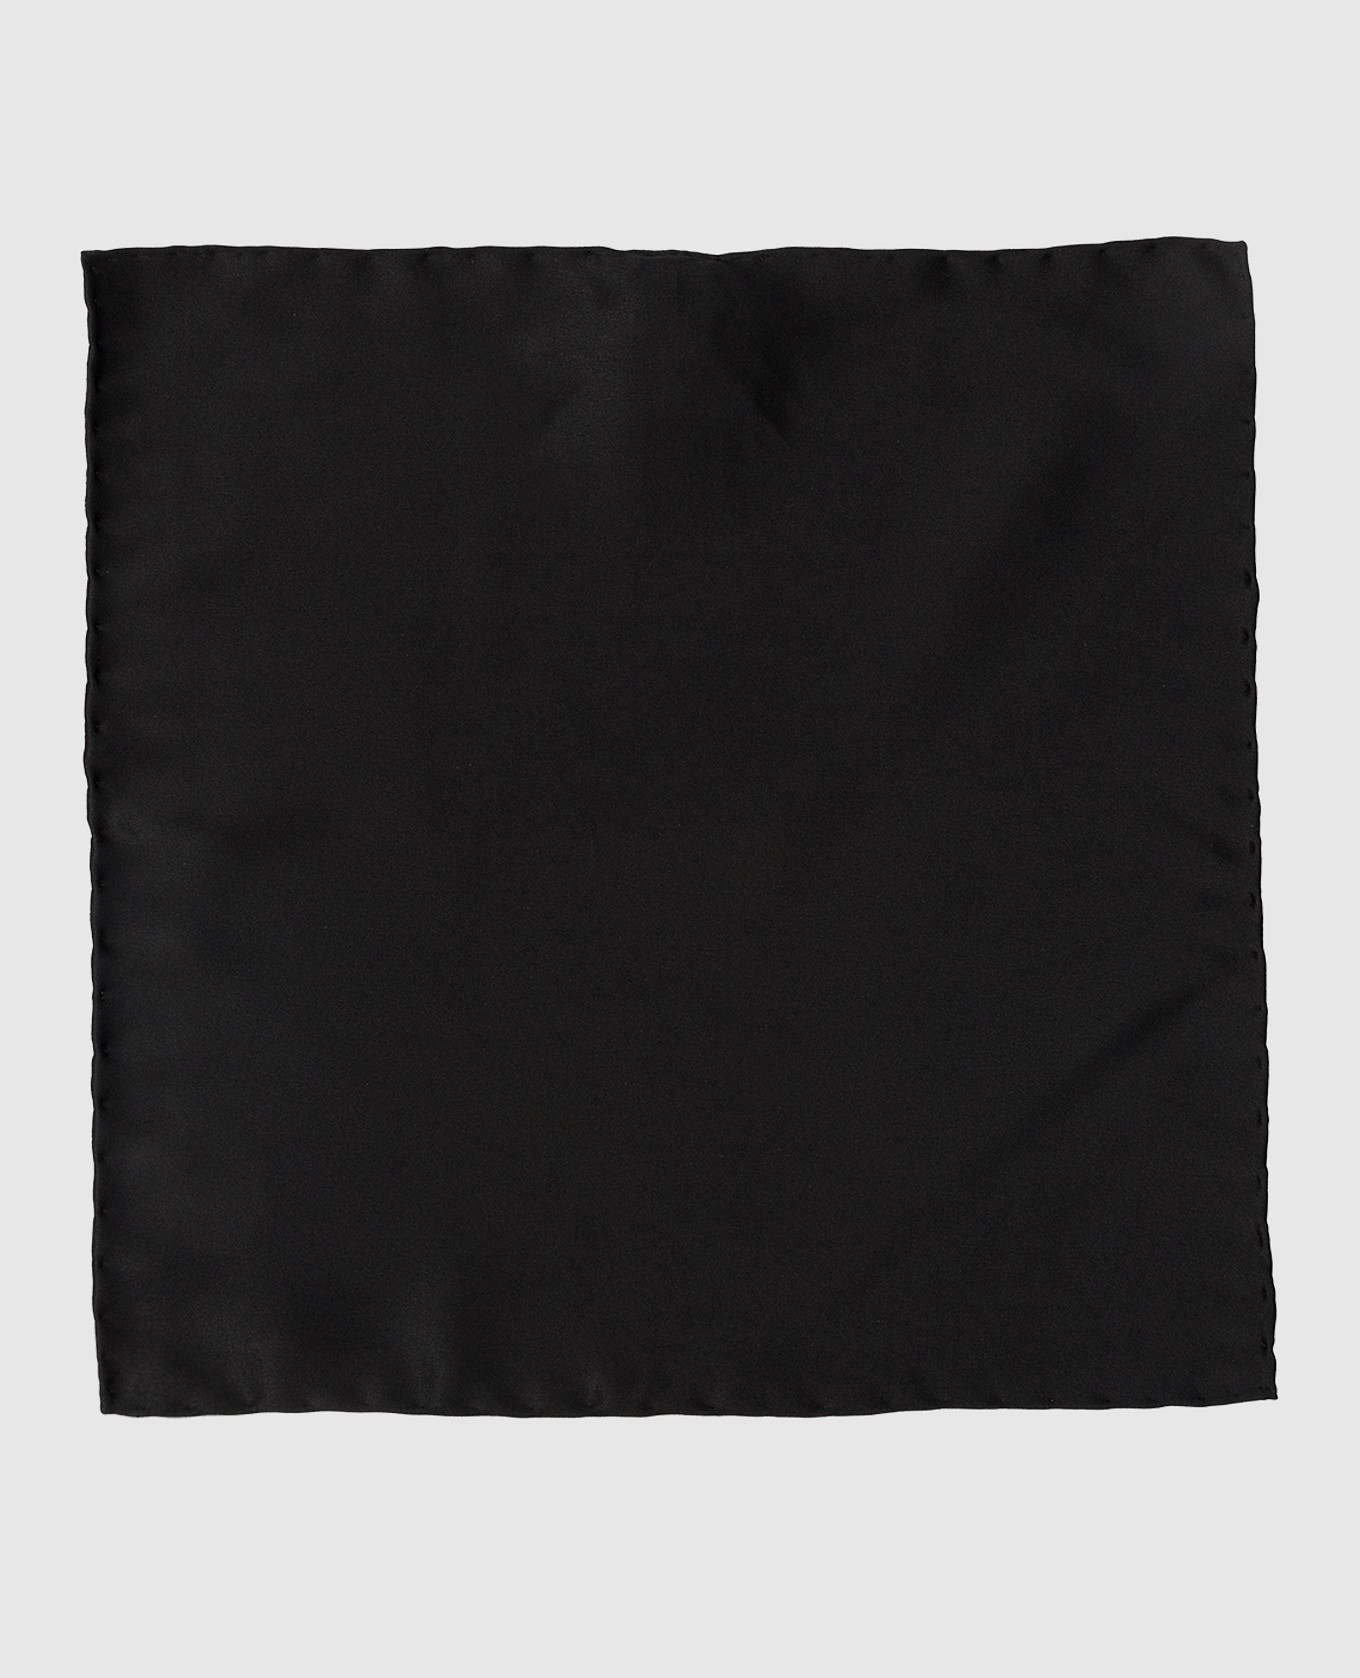 Children's black silk scarf